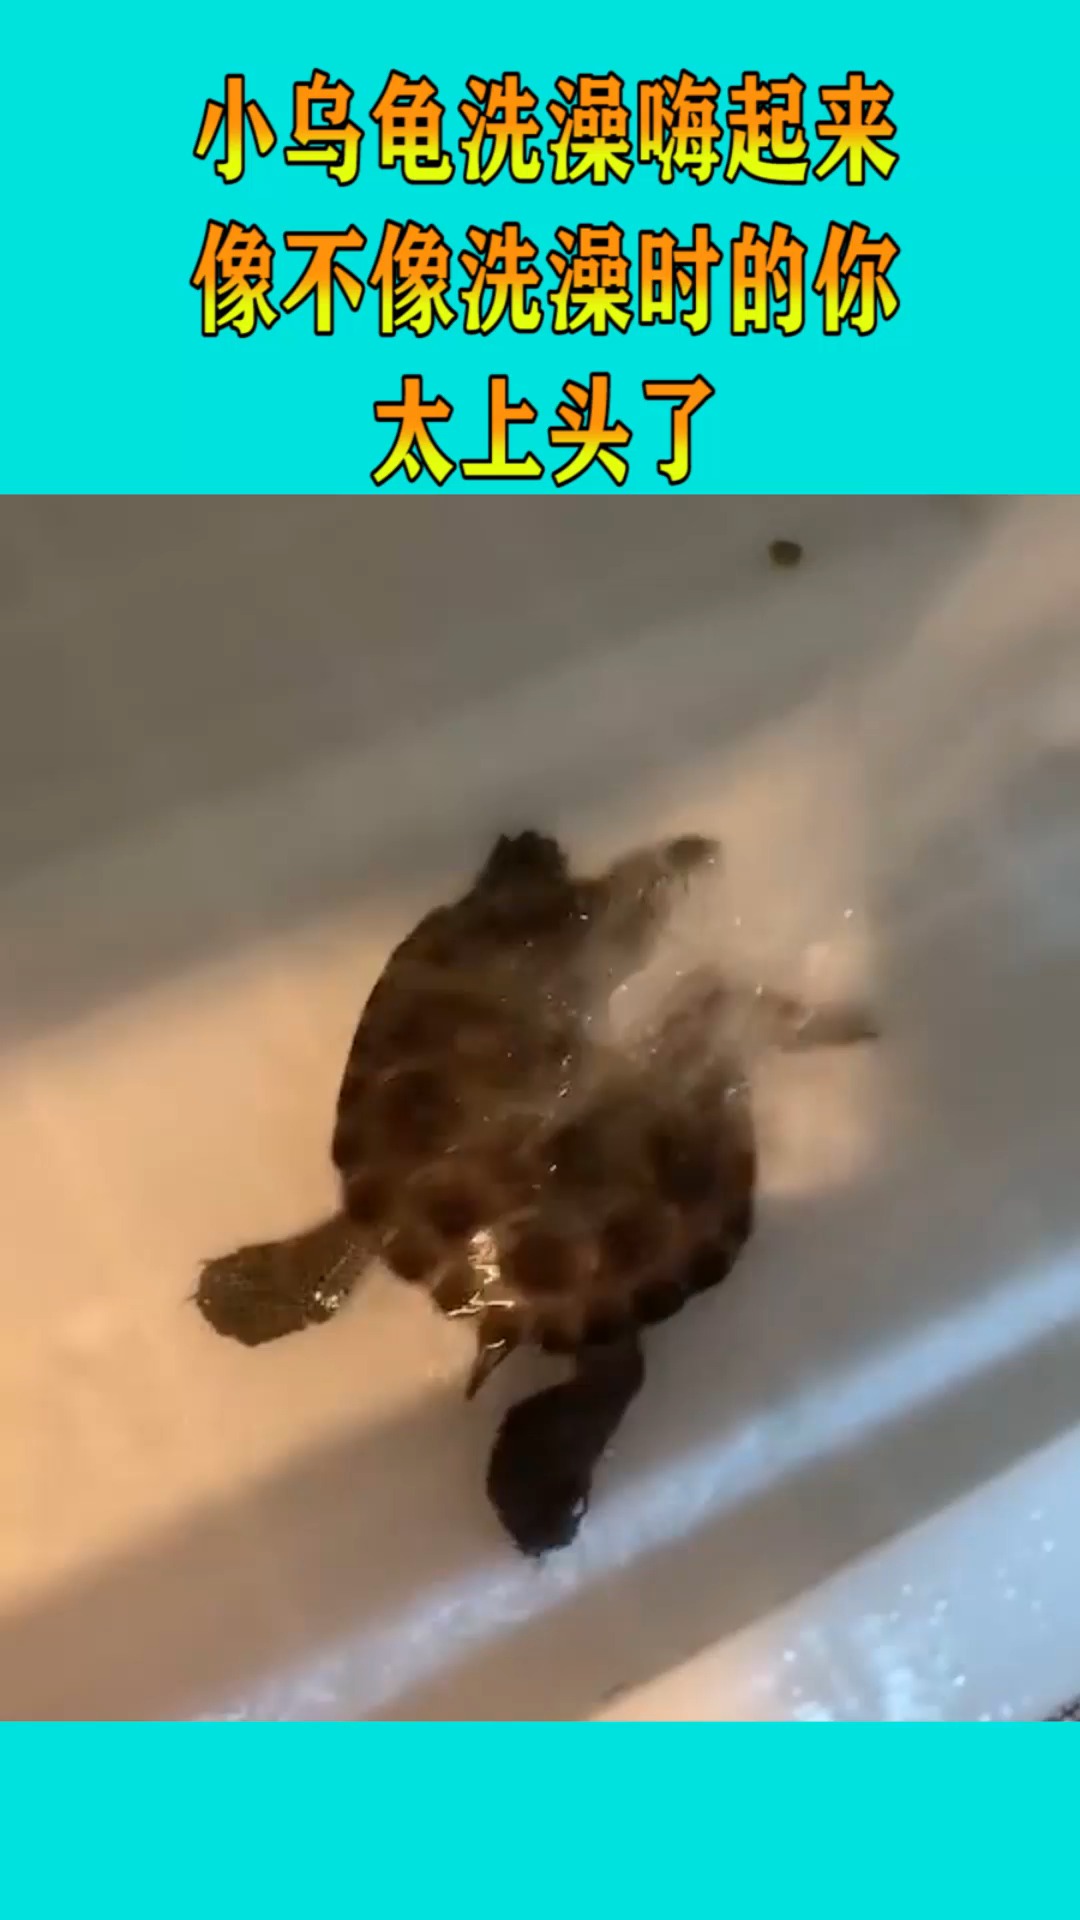 小乌龟洗澡嗨起来,像不像洗澡时的你,太上头了!